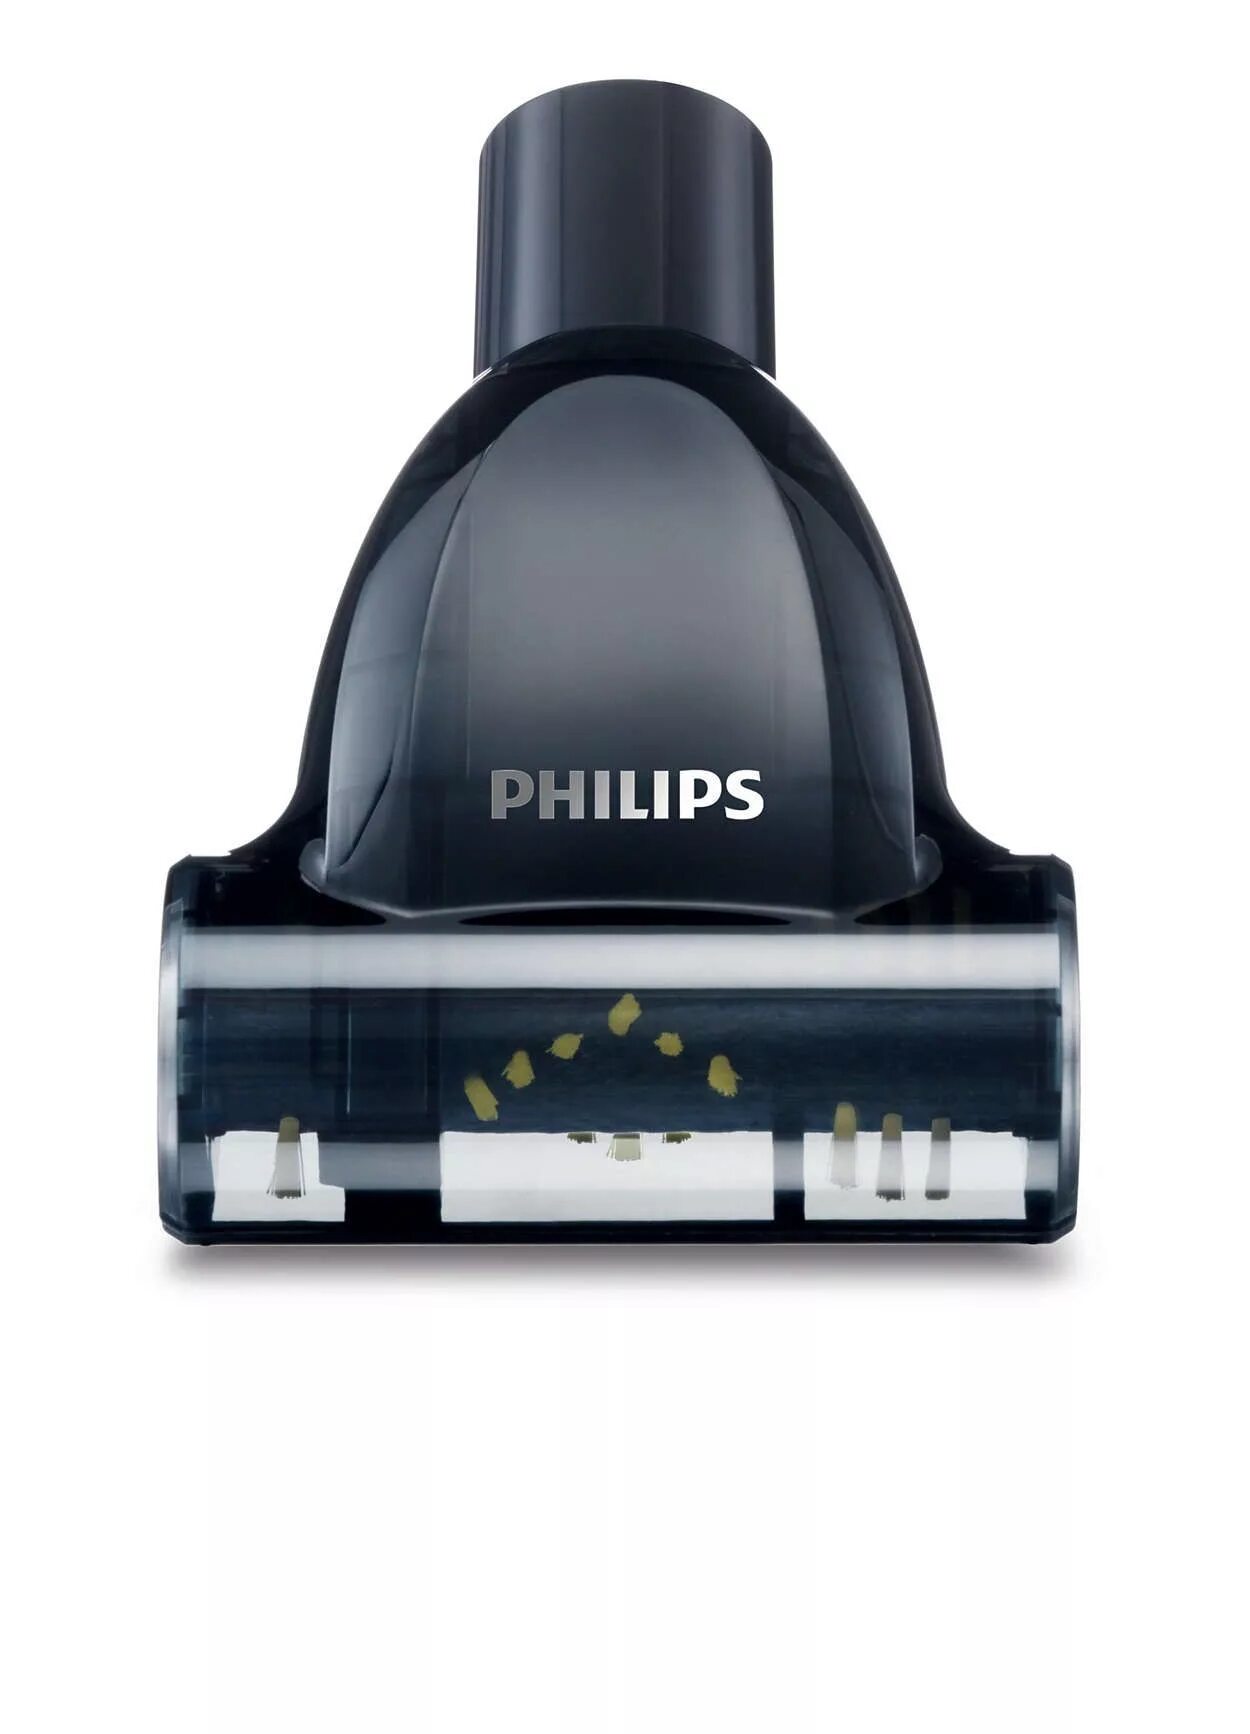 Турбощетка филипс. Пылесос Philips fc8455 POWERLIFE. Philips fc8455 POWERLIFE. Пылесос Philips fc8455/01. Филипс FC 8455 пылесос.